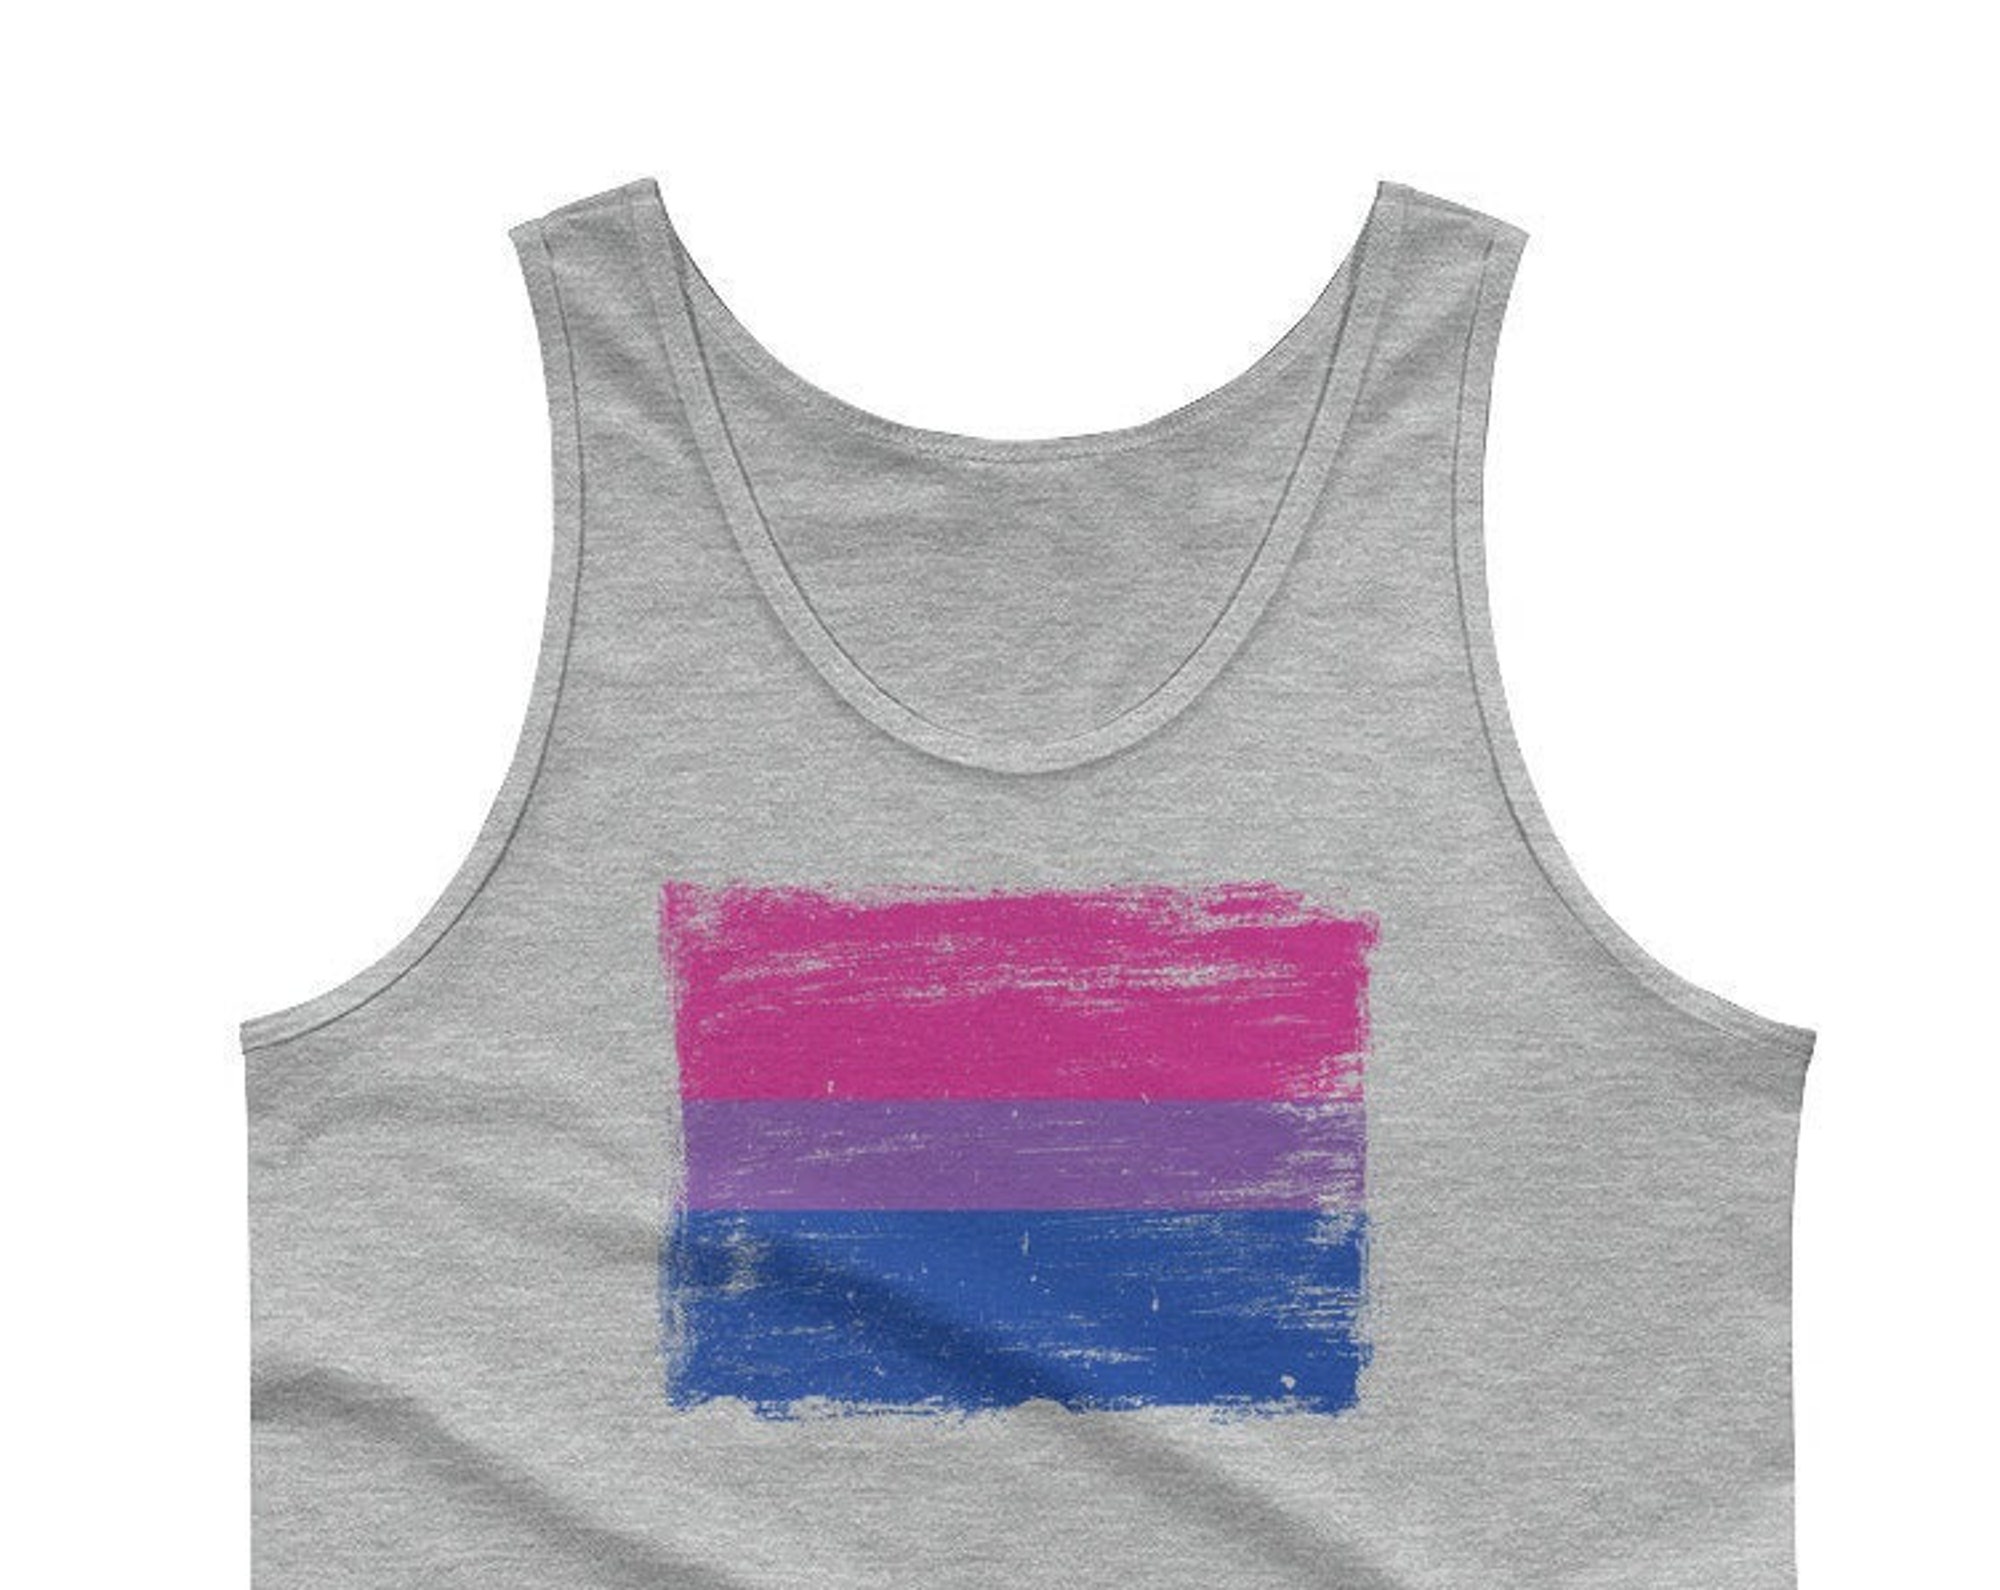 Bisexual Pride Flag Tank Top - Vintage Distressed Painted Flag